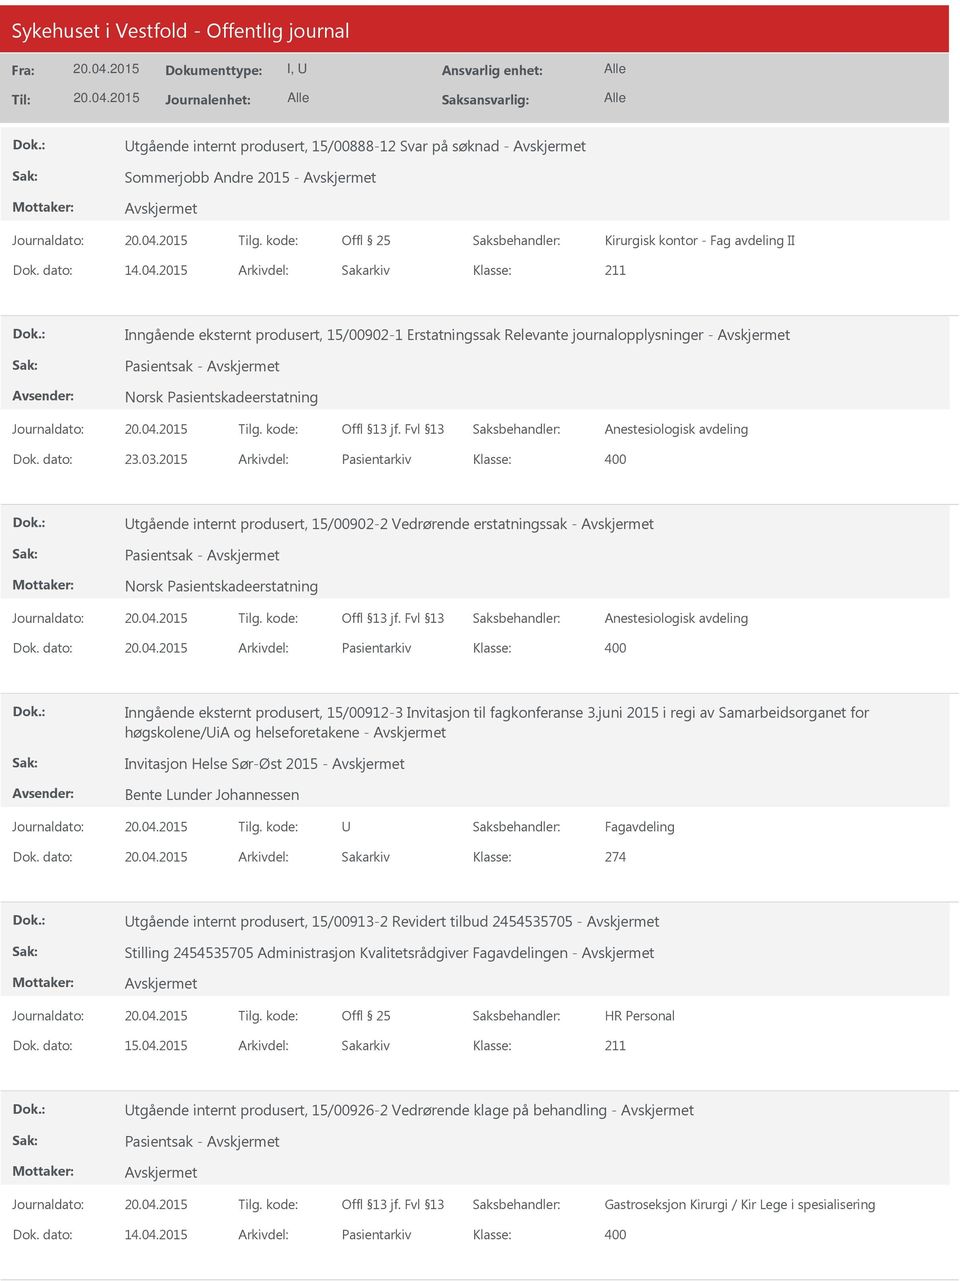 2015 Arkivdel: Pasientarkiv Utgående internt produsert, 15/00902-2 Vedrørende erstatningssak - Pasientsak - Norsk Pasientskadeerstatning Anestesiologisk avdeling Dok.